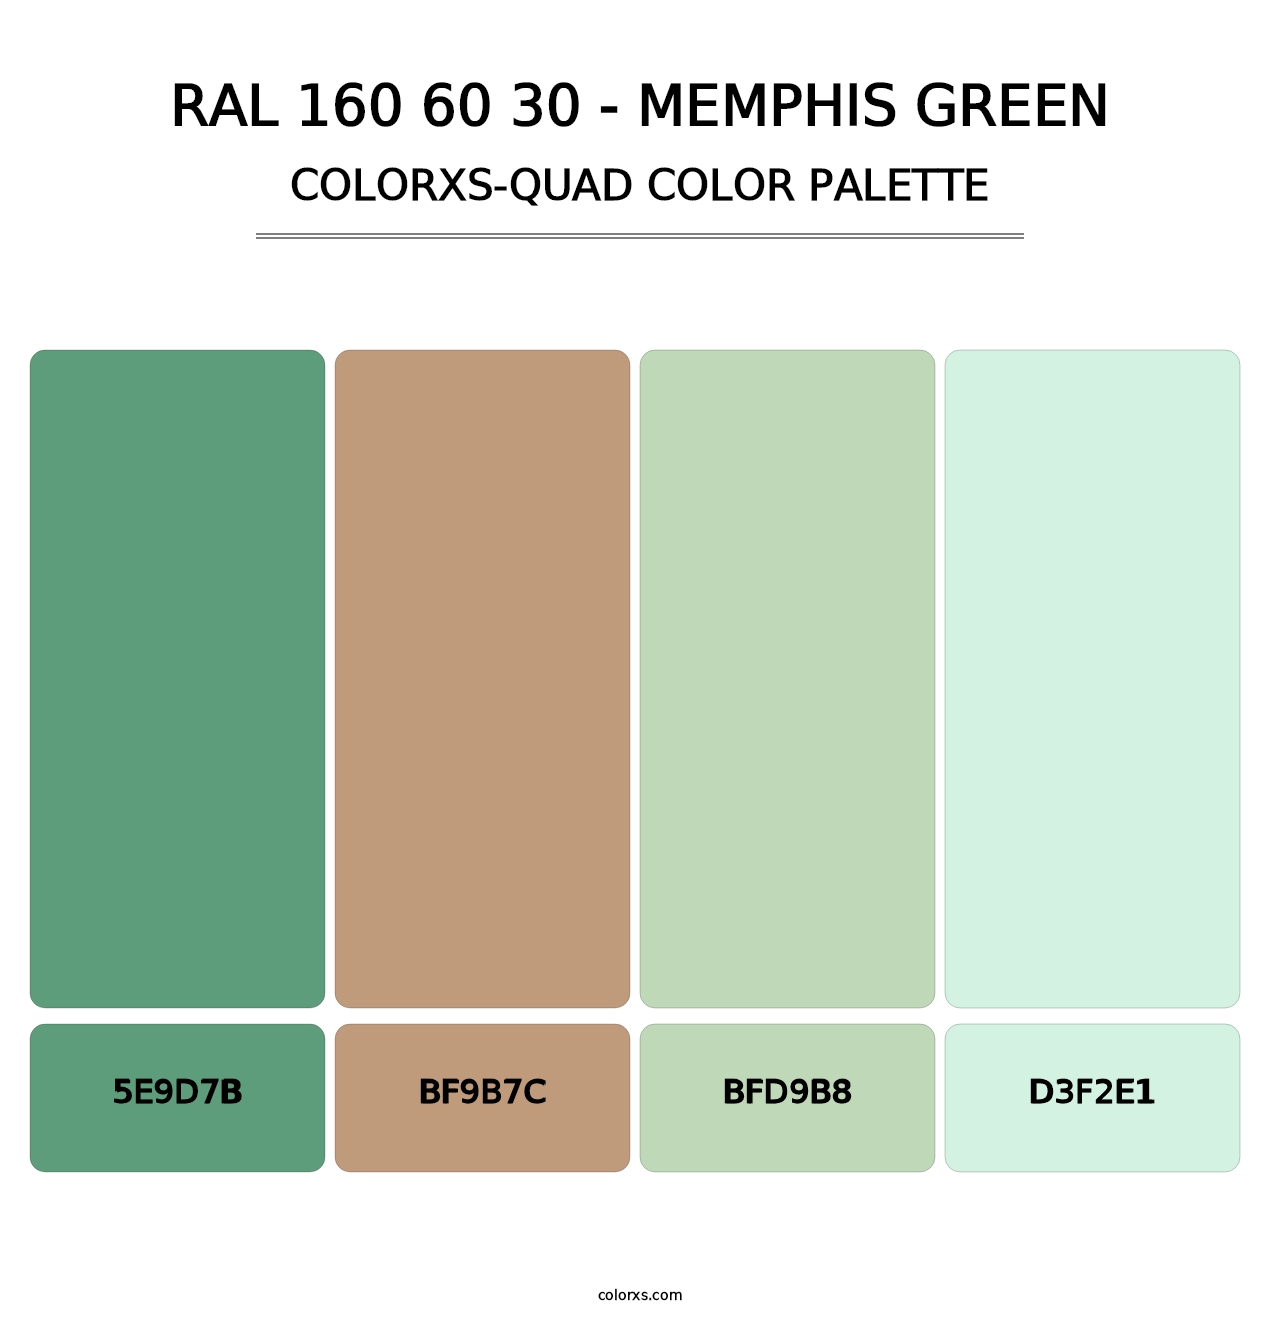 RAL 160 60 30 - Memphis Green - Colorxs Quad Palette